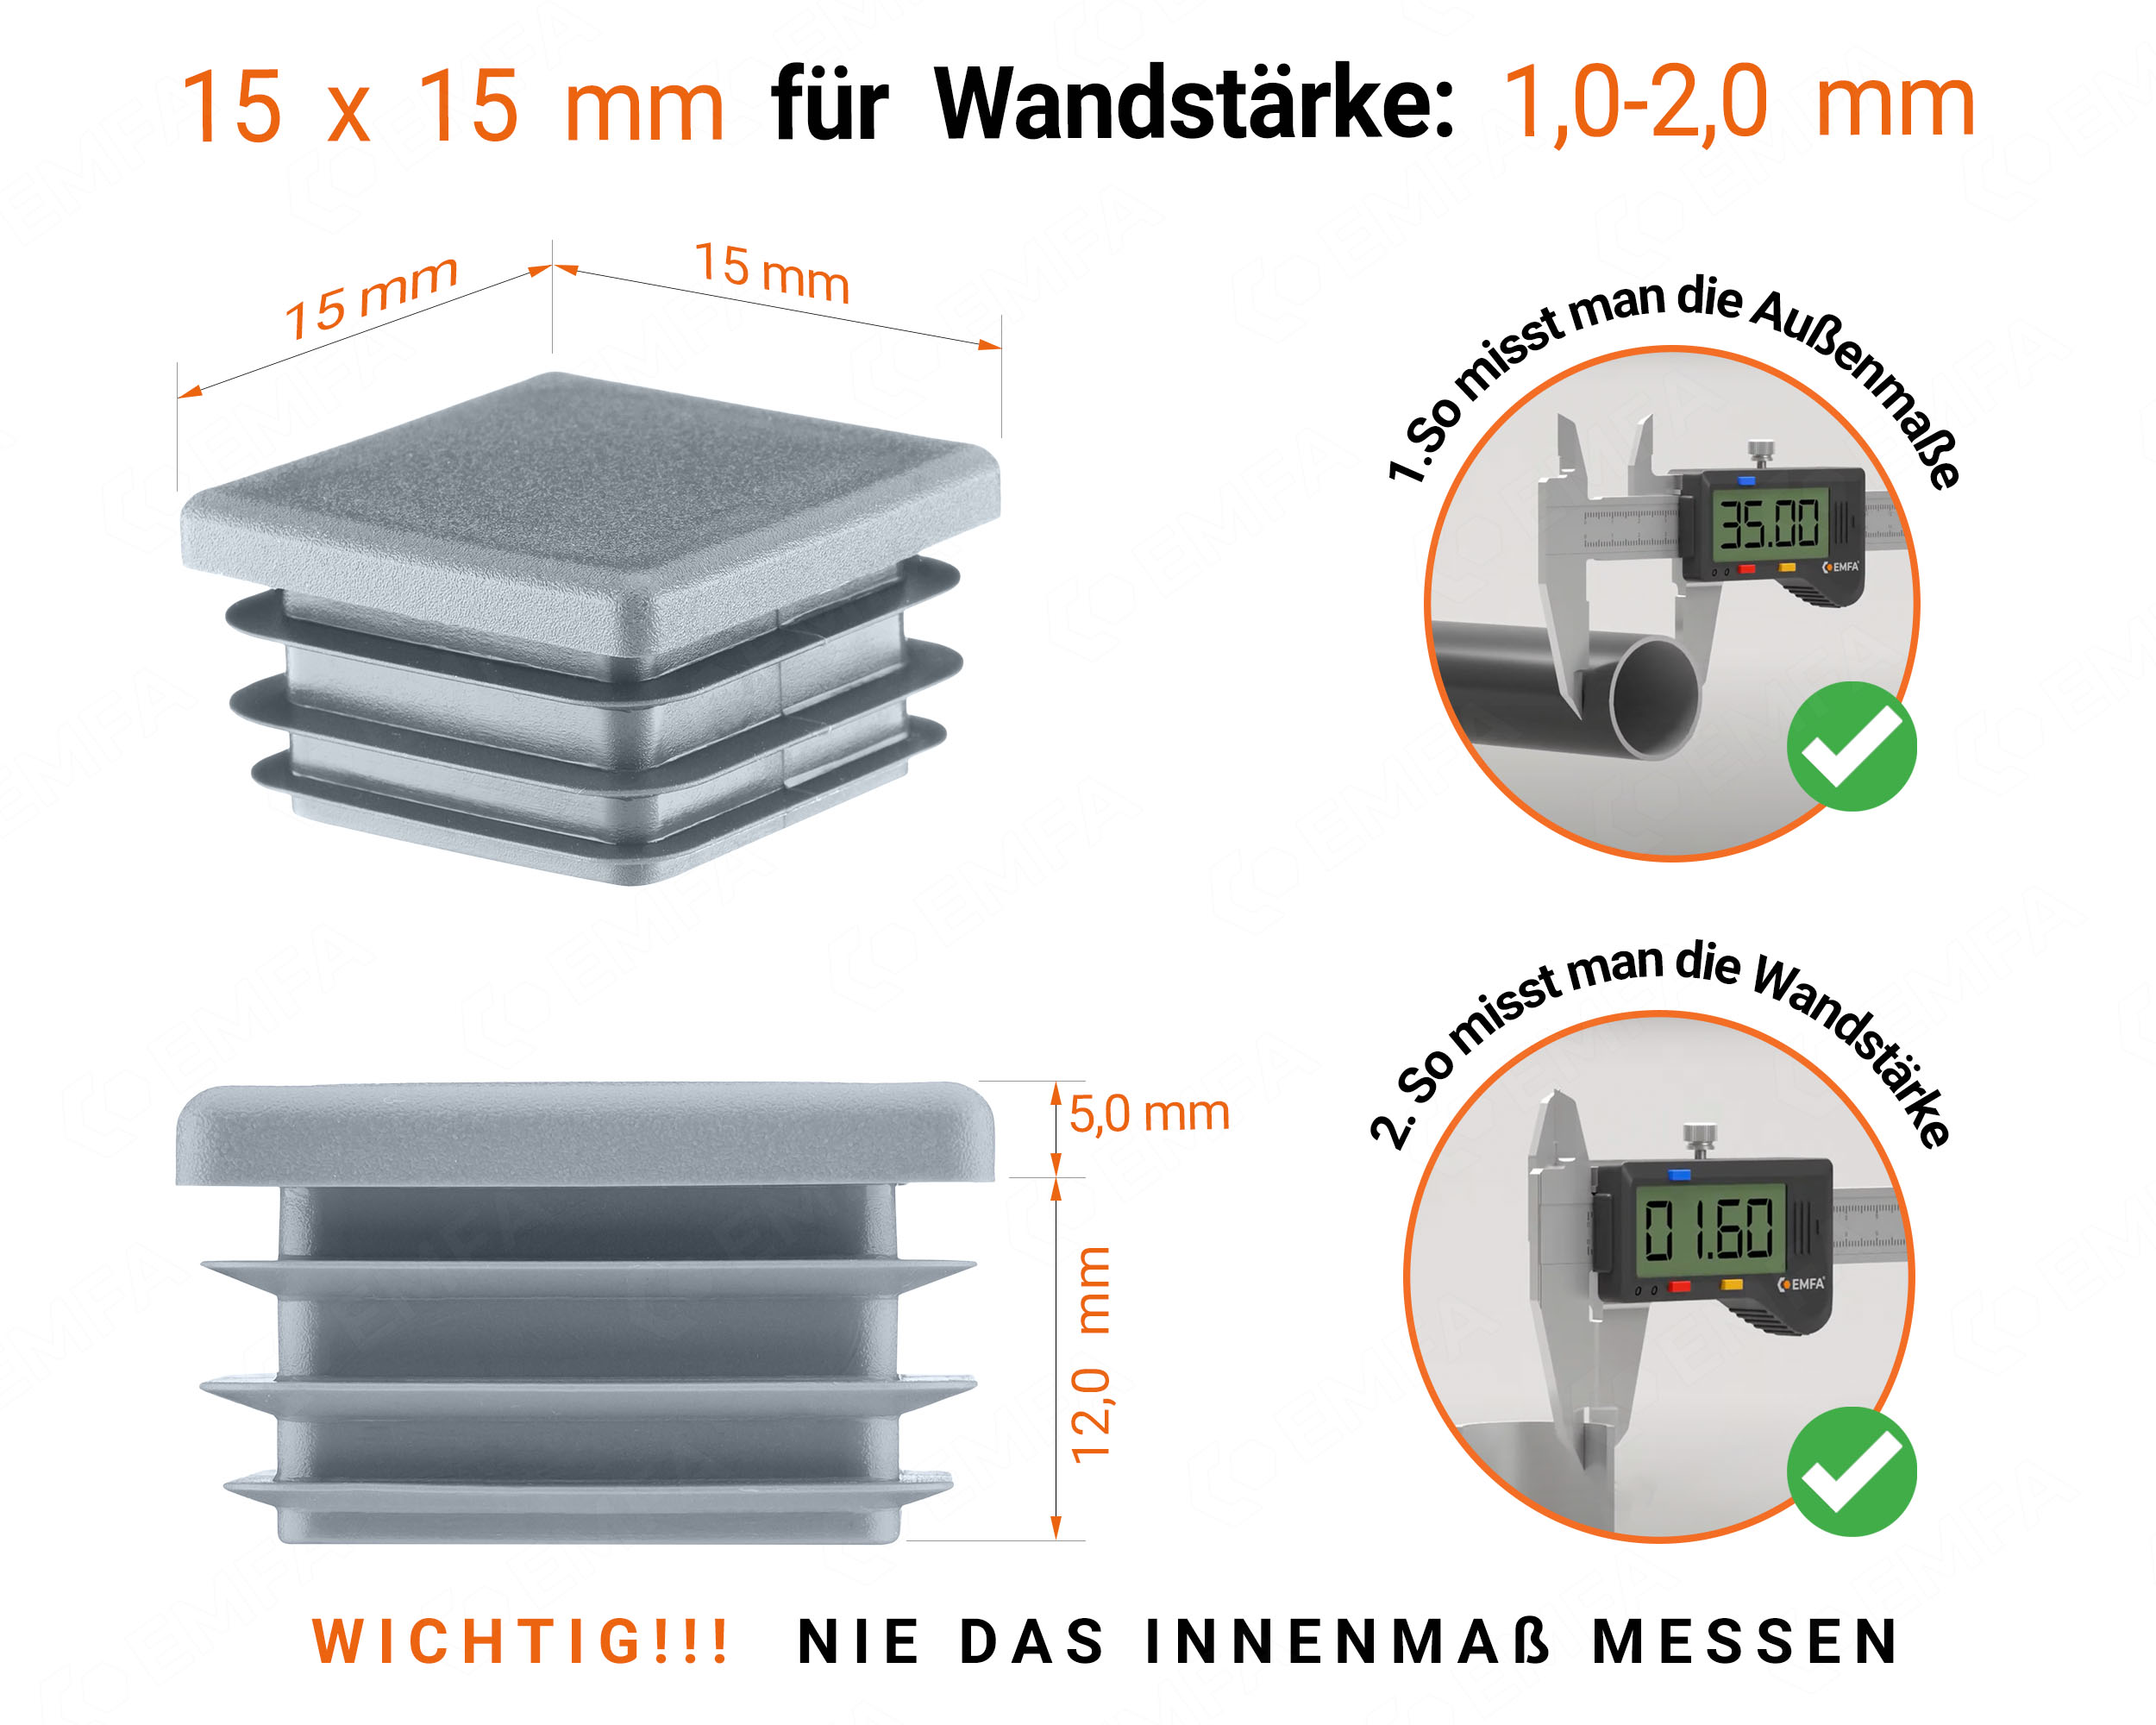 Grau Endkappe für Vierkantrohre in der Größe 15x15 mm mit technischen Abmessungen und Anleitung für korrekte Messung